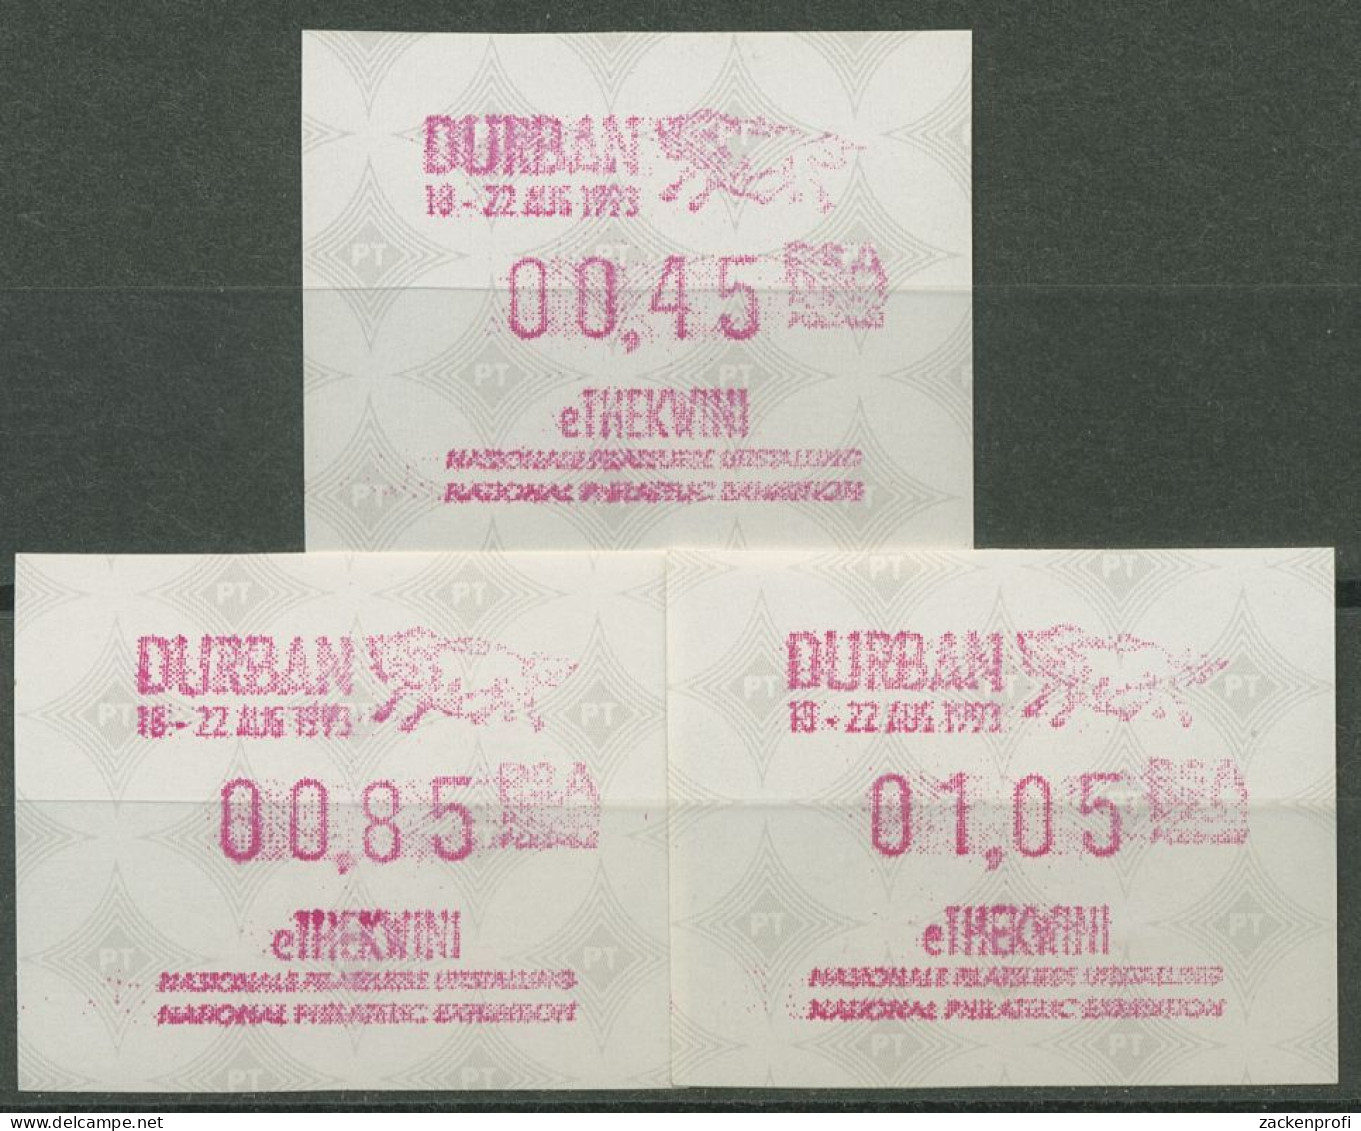 Südafrika ATM 1993 Austellung DURBAN, Satz 3 Werte ATM 12.2 S1 Postfrisch - Frama Labels